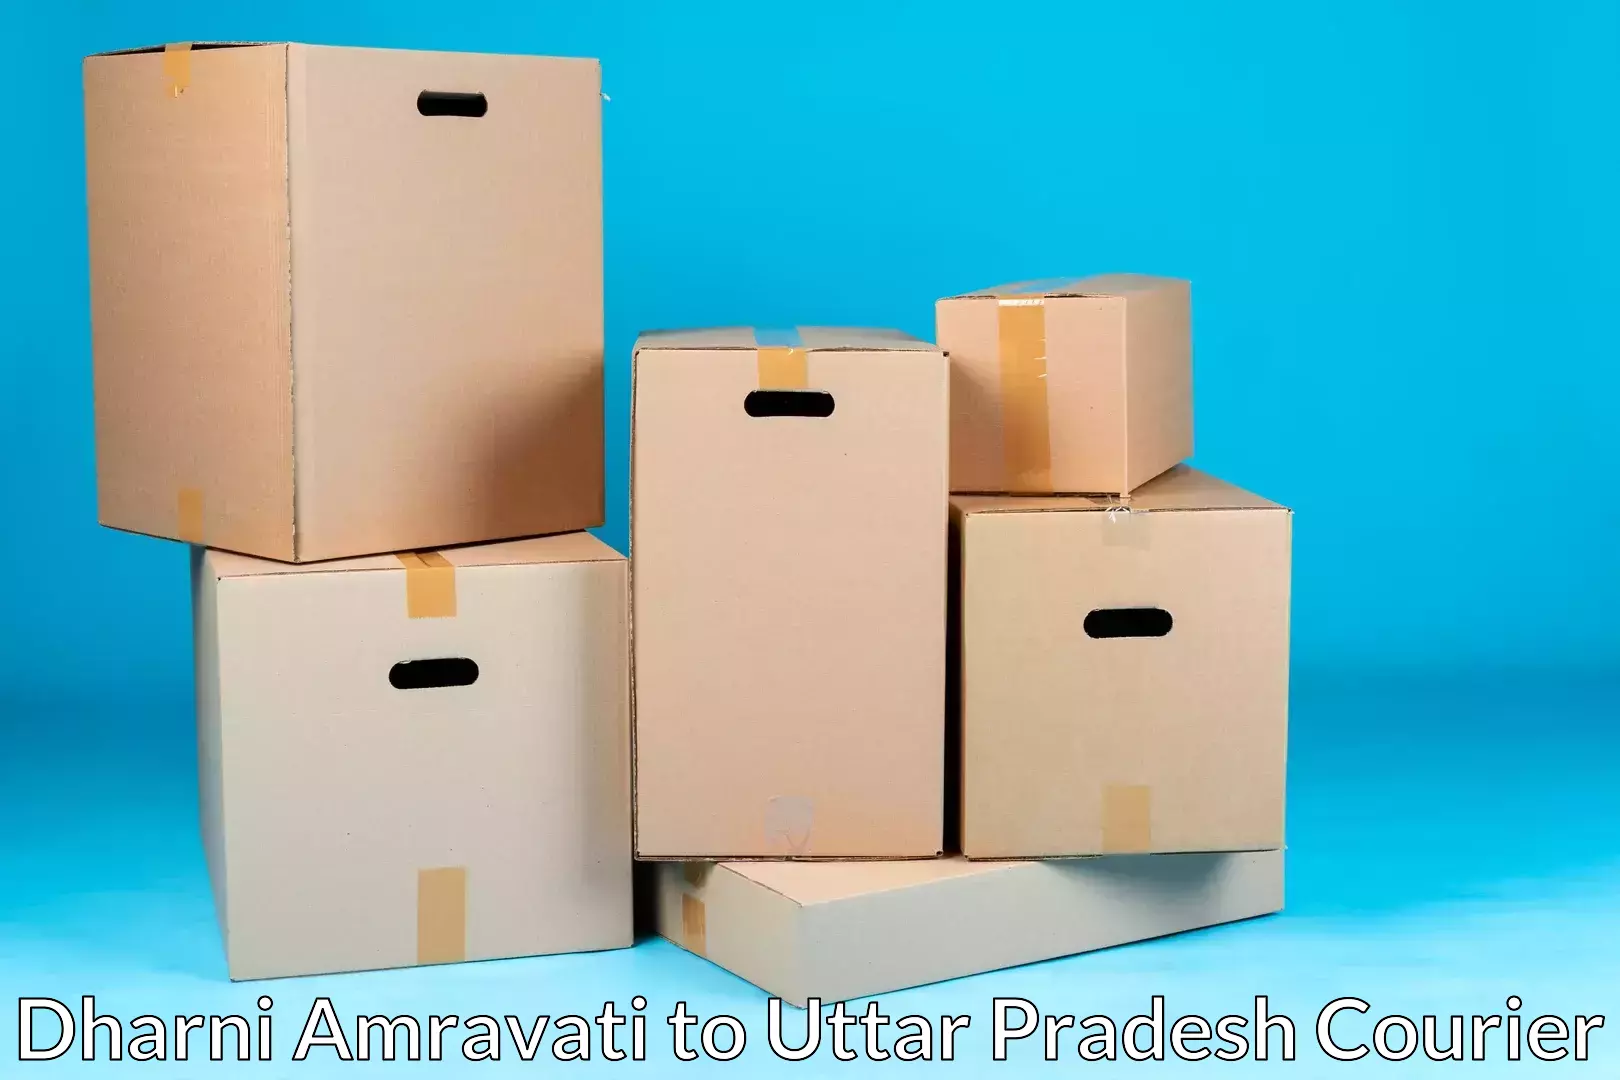 Trusted furniture movers Dharni Amravati to Banaras Hindu University Varanasi